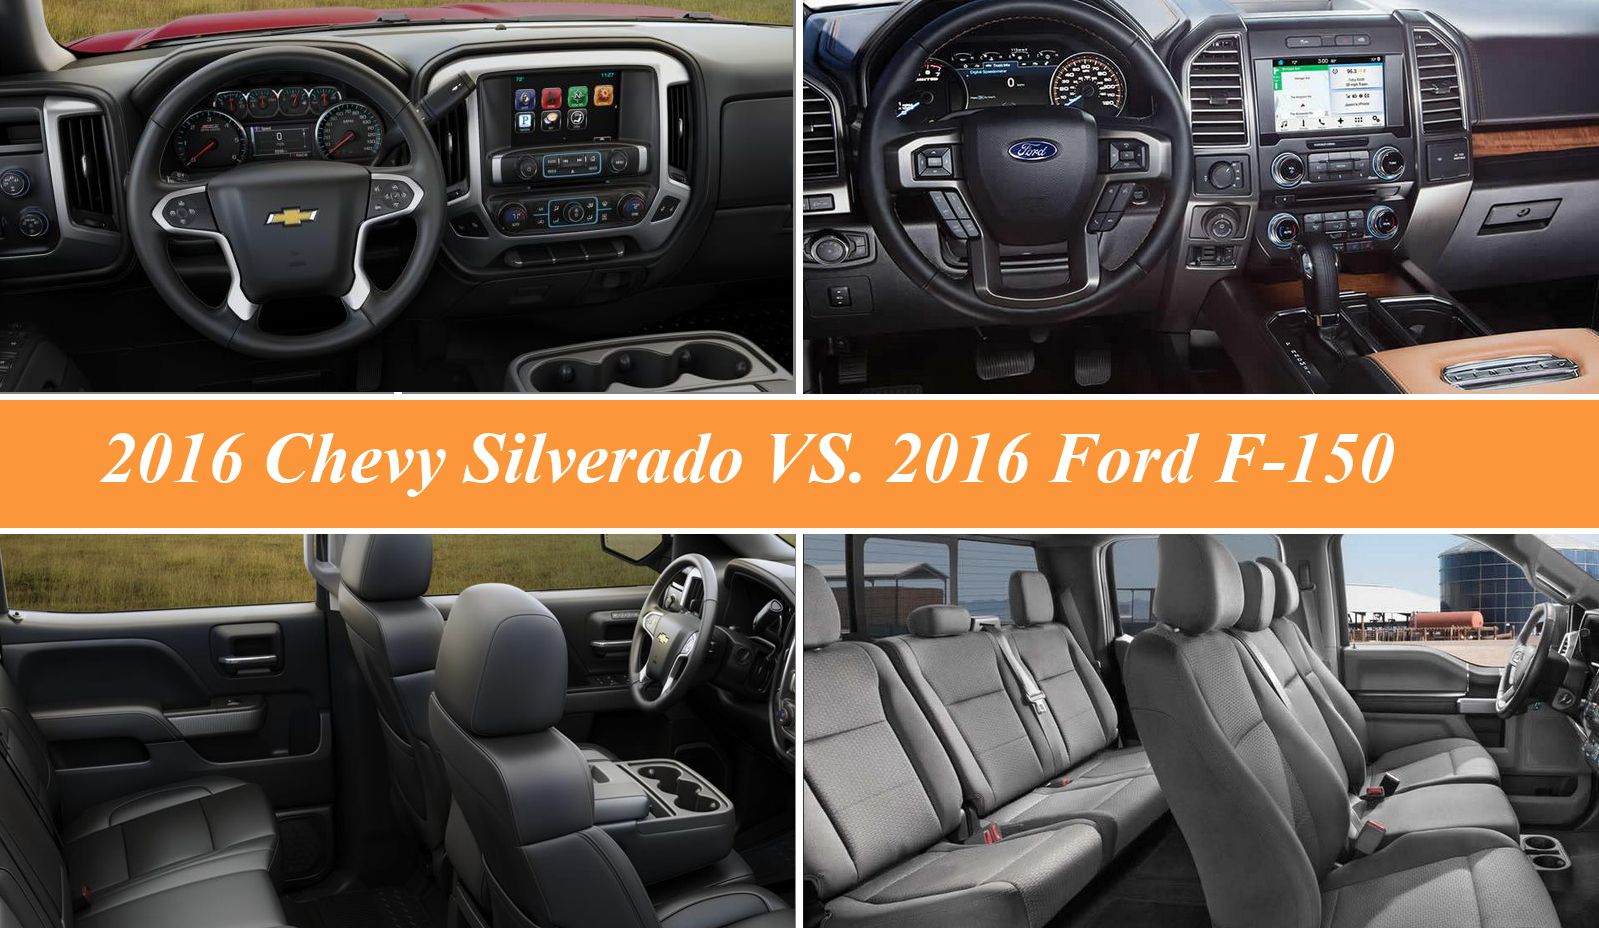 2016 2016 Chevy Silverado vs. 2016 Ford F-150